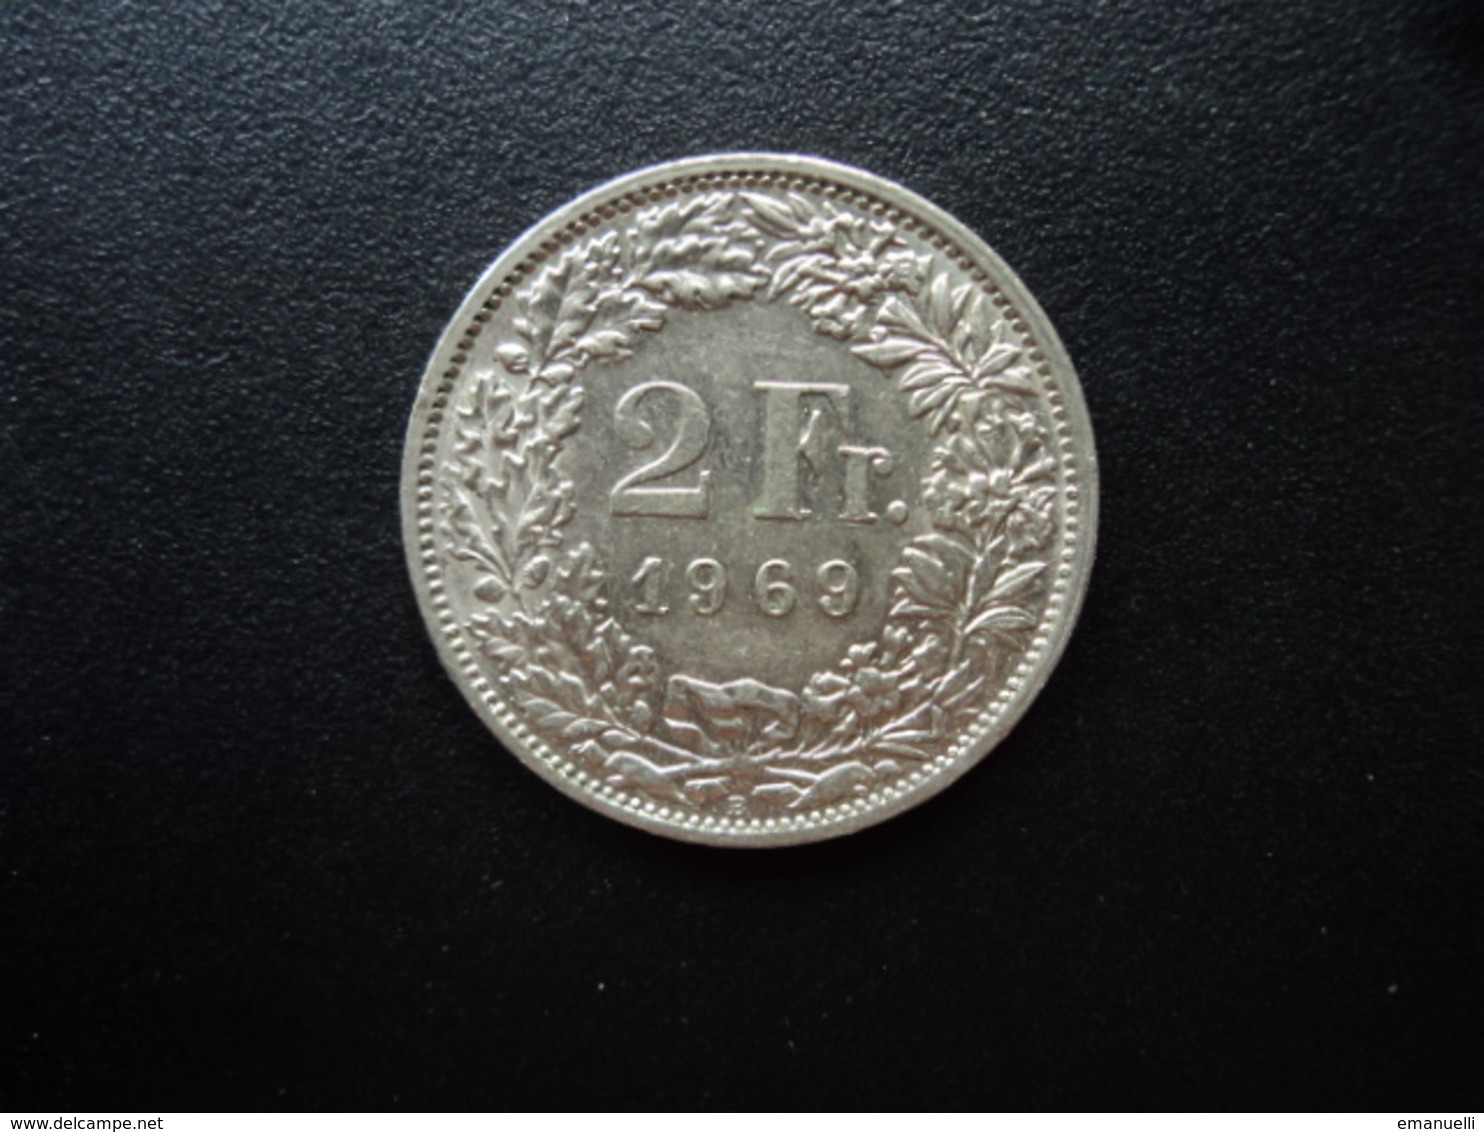 SUISSE : 2 FRANCS   1969 B    KM 21a.1      SUP - 2 Francs